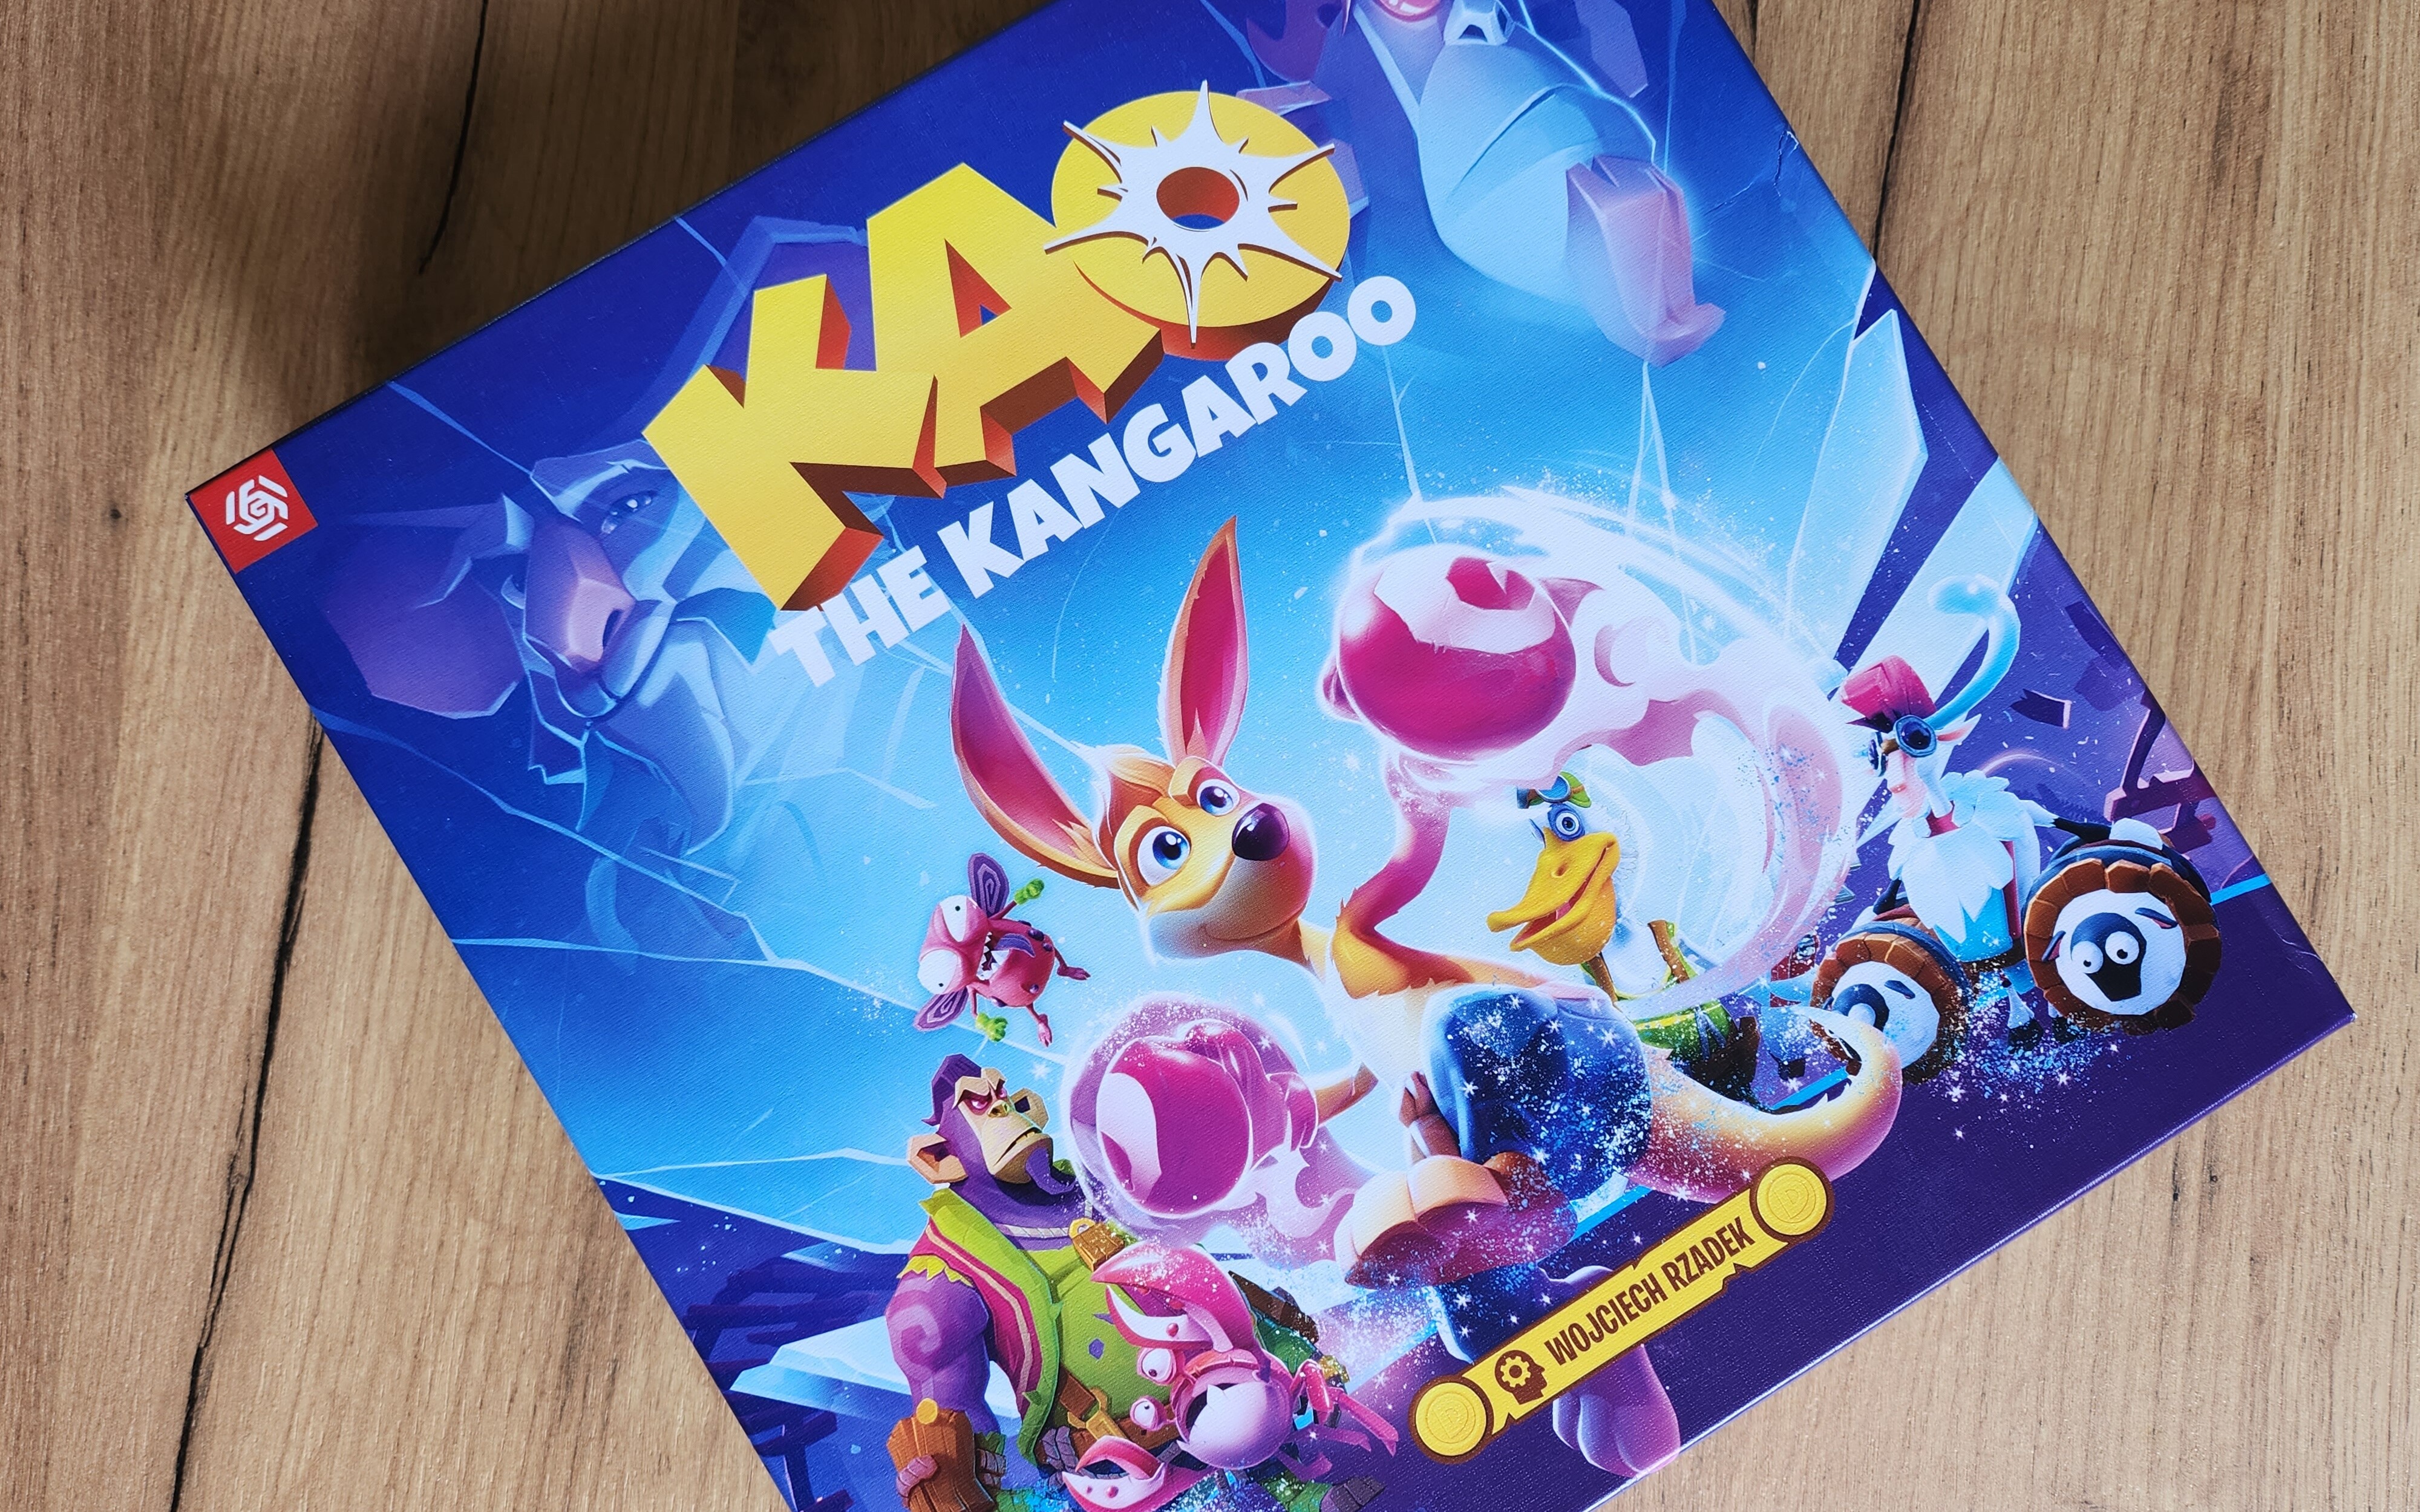 Kangurek Kao – recenzja i opinia o grze planszowej. Z gry wideo na planszę